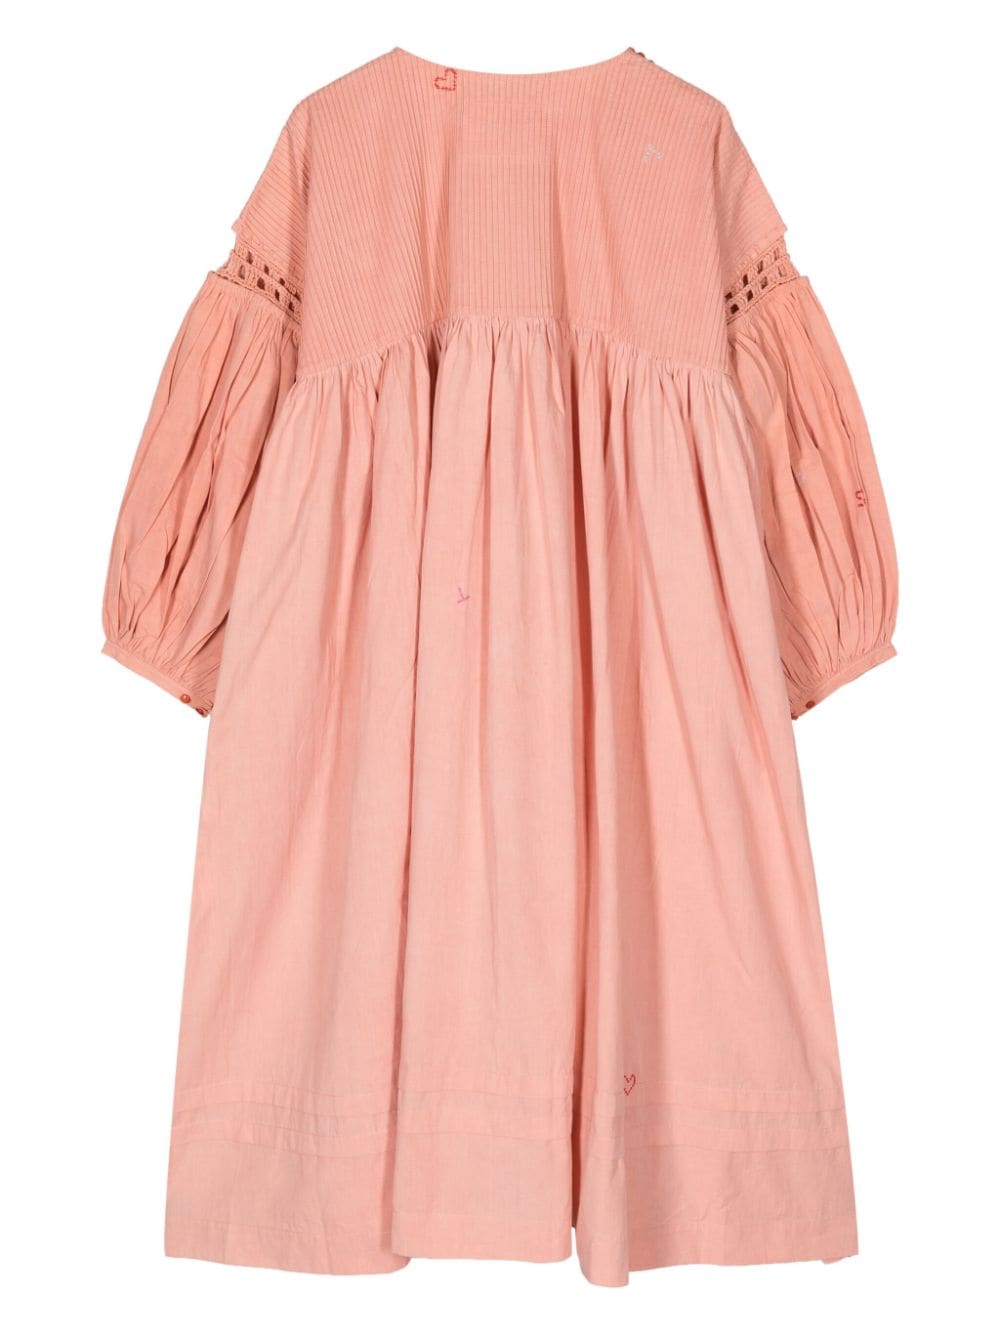 STORY mfg. Katoenen jurk met gehaakt detail - Roze